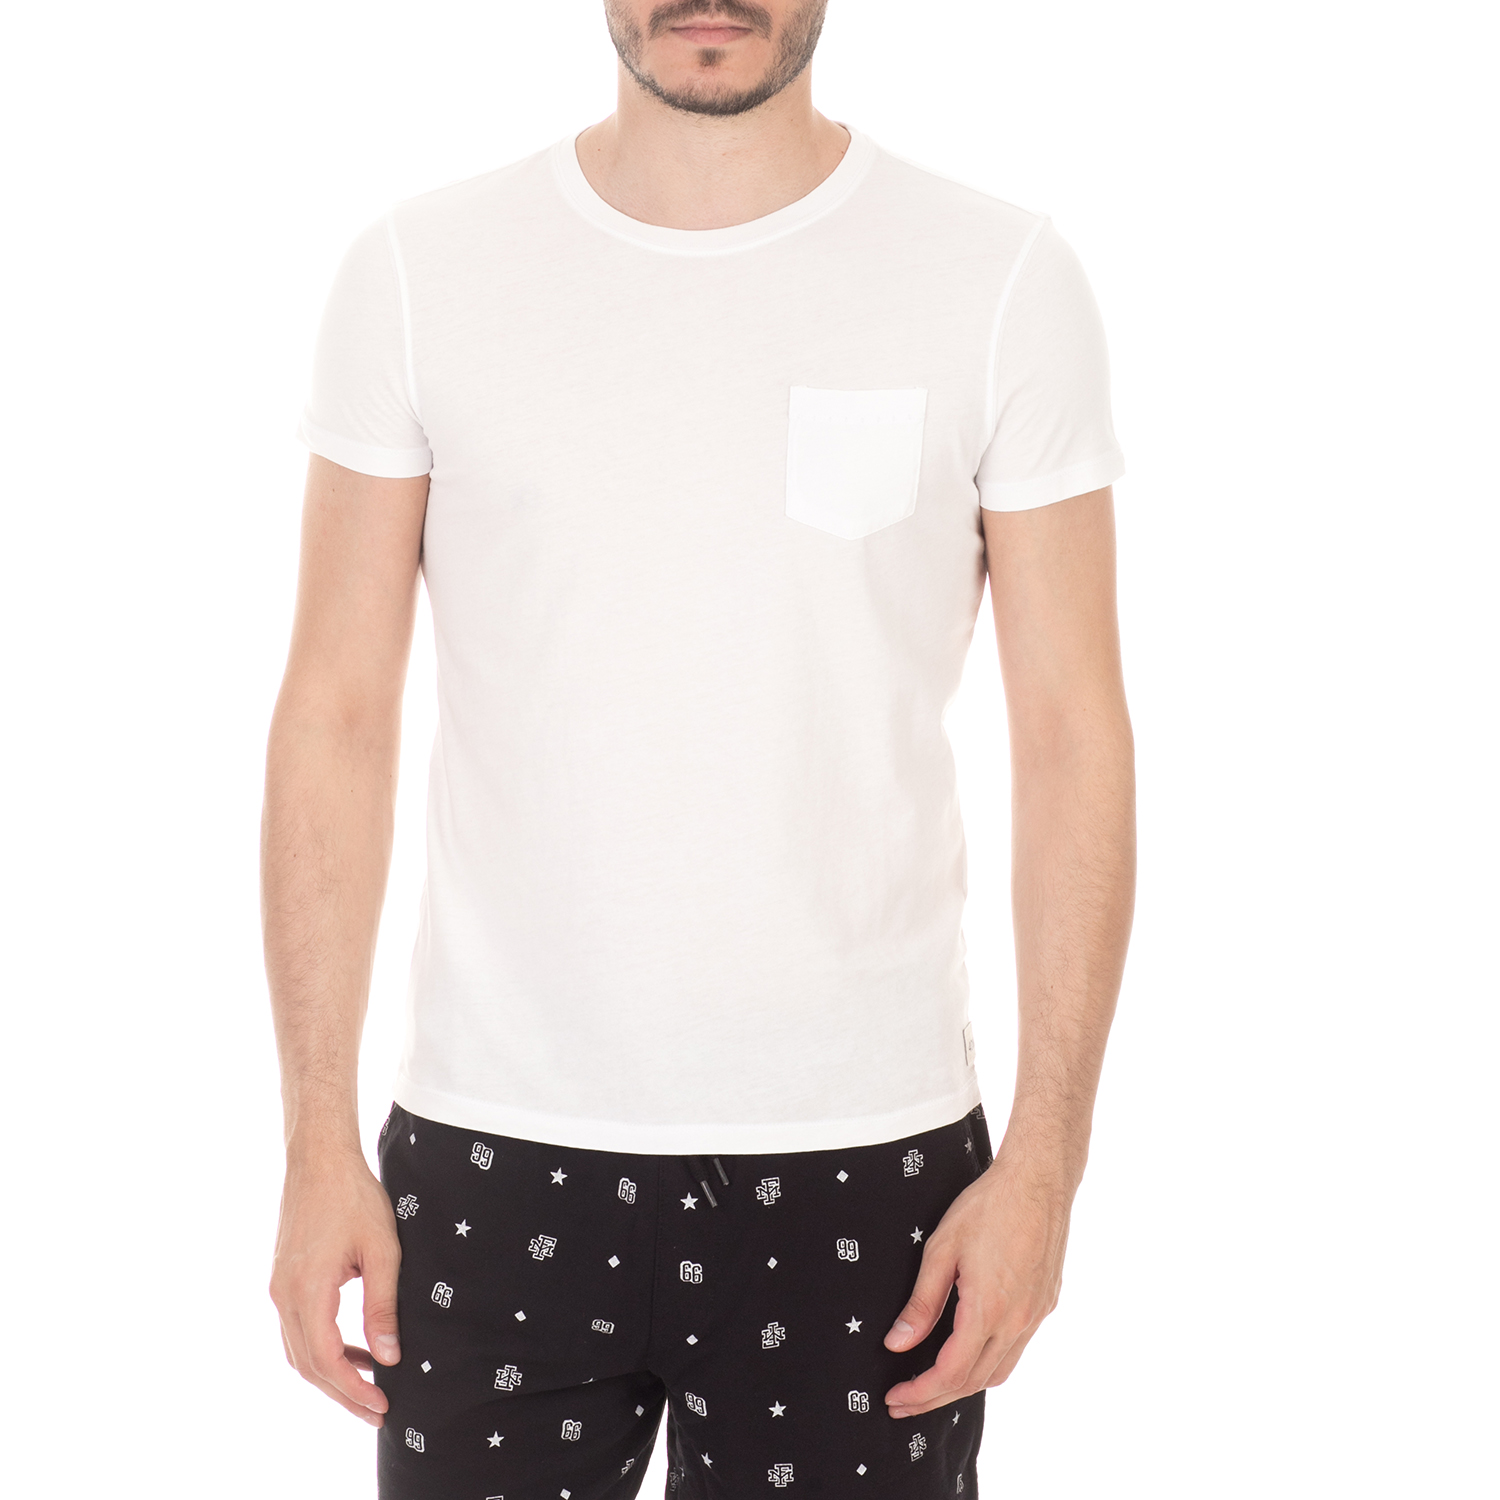 Ανδρικά/Ρούχα/Μπλούζες/Κοντομάνικες 40-WEFT - Ανδρική κοντομάνικη μπλούζα 40-WEFT BILL λευκή